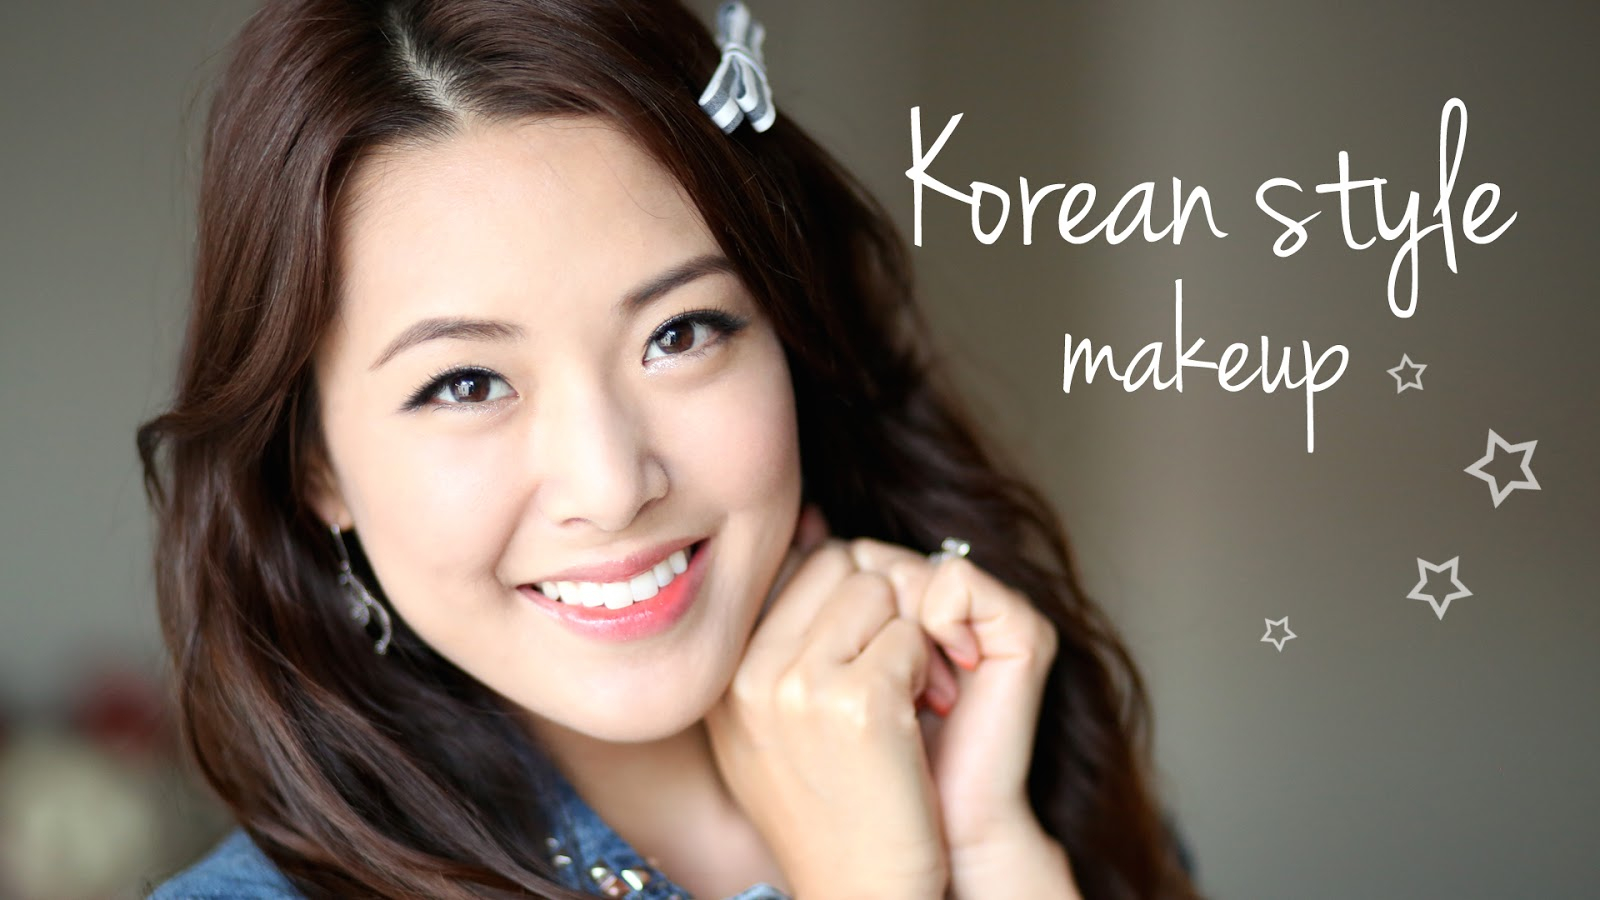 Korean Eyes Makeup Tutorial Korean Style Makeup Tutorial From Head To Toe